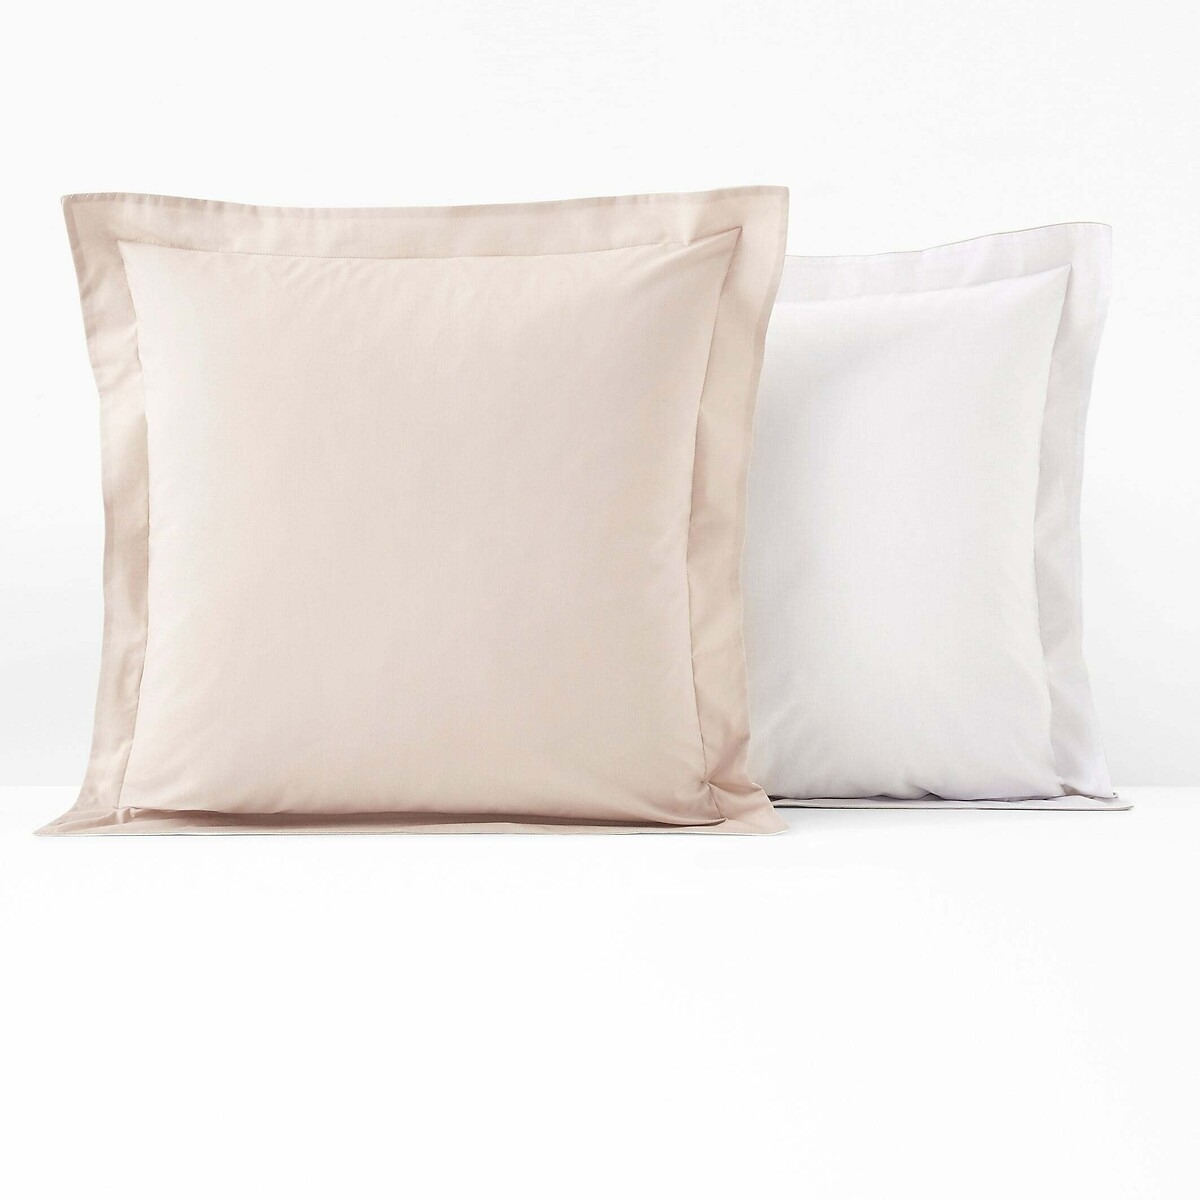 Two-Tone Cotton Pillowcase - image 1